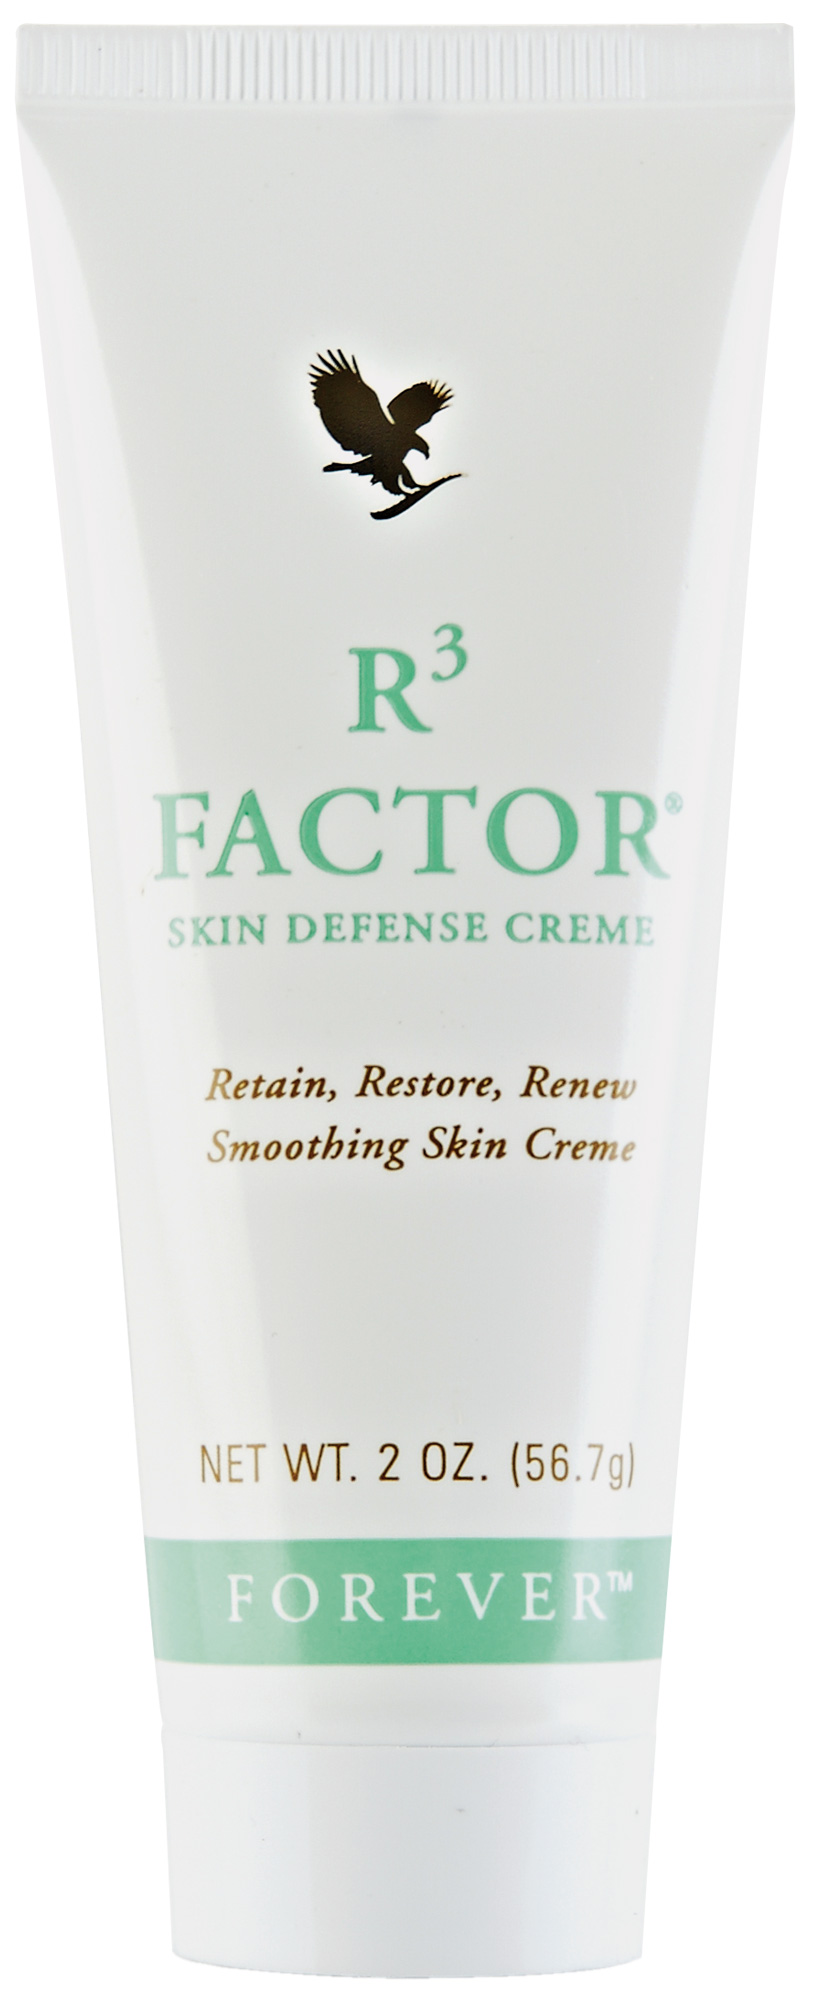 FOREVER R³ Factor Skin Defense Creme